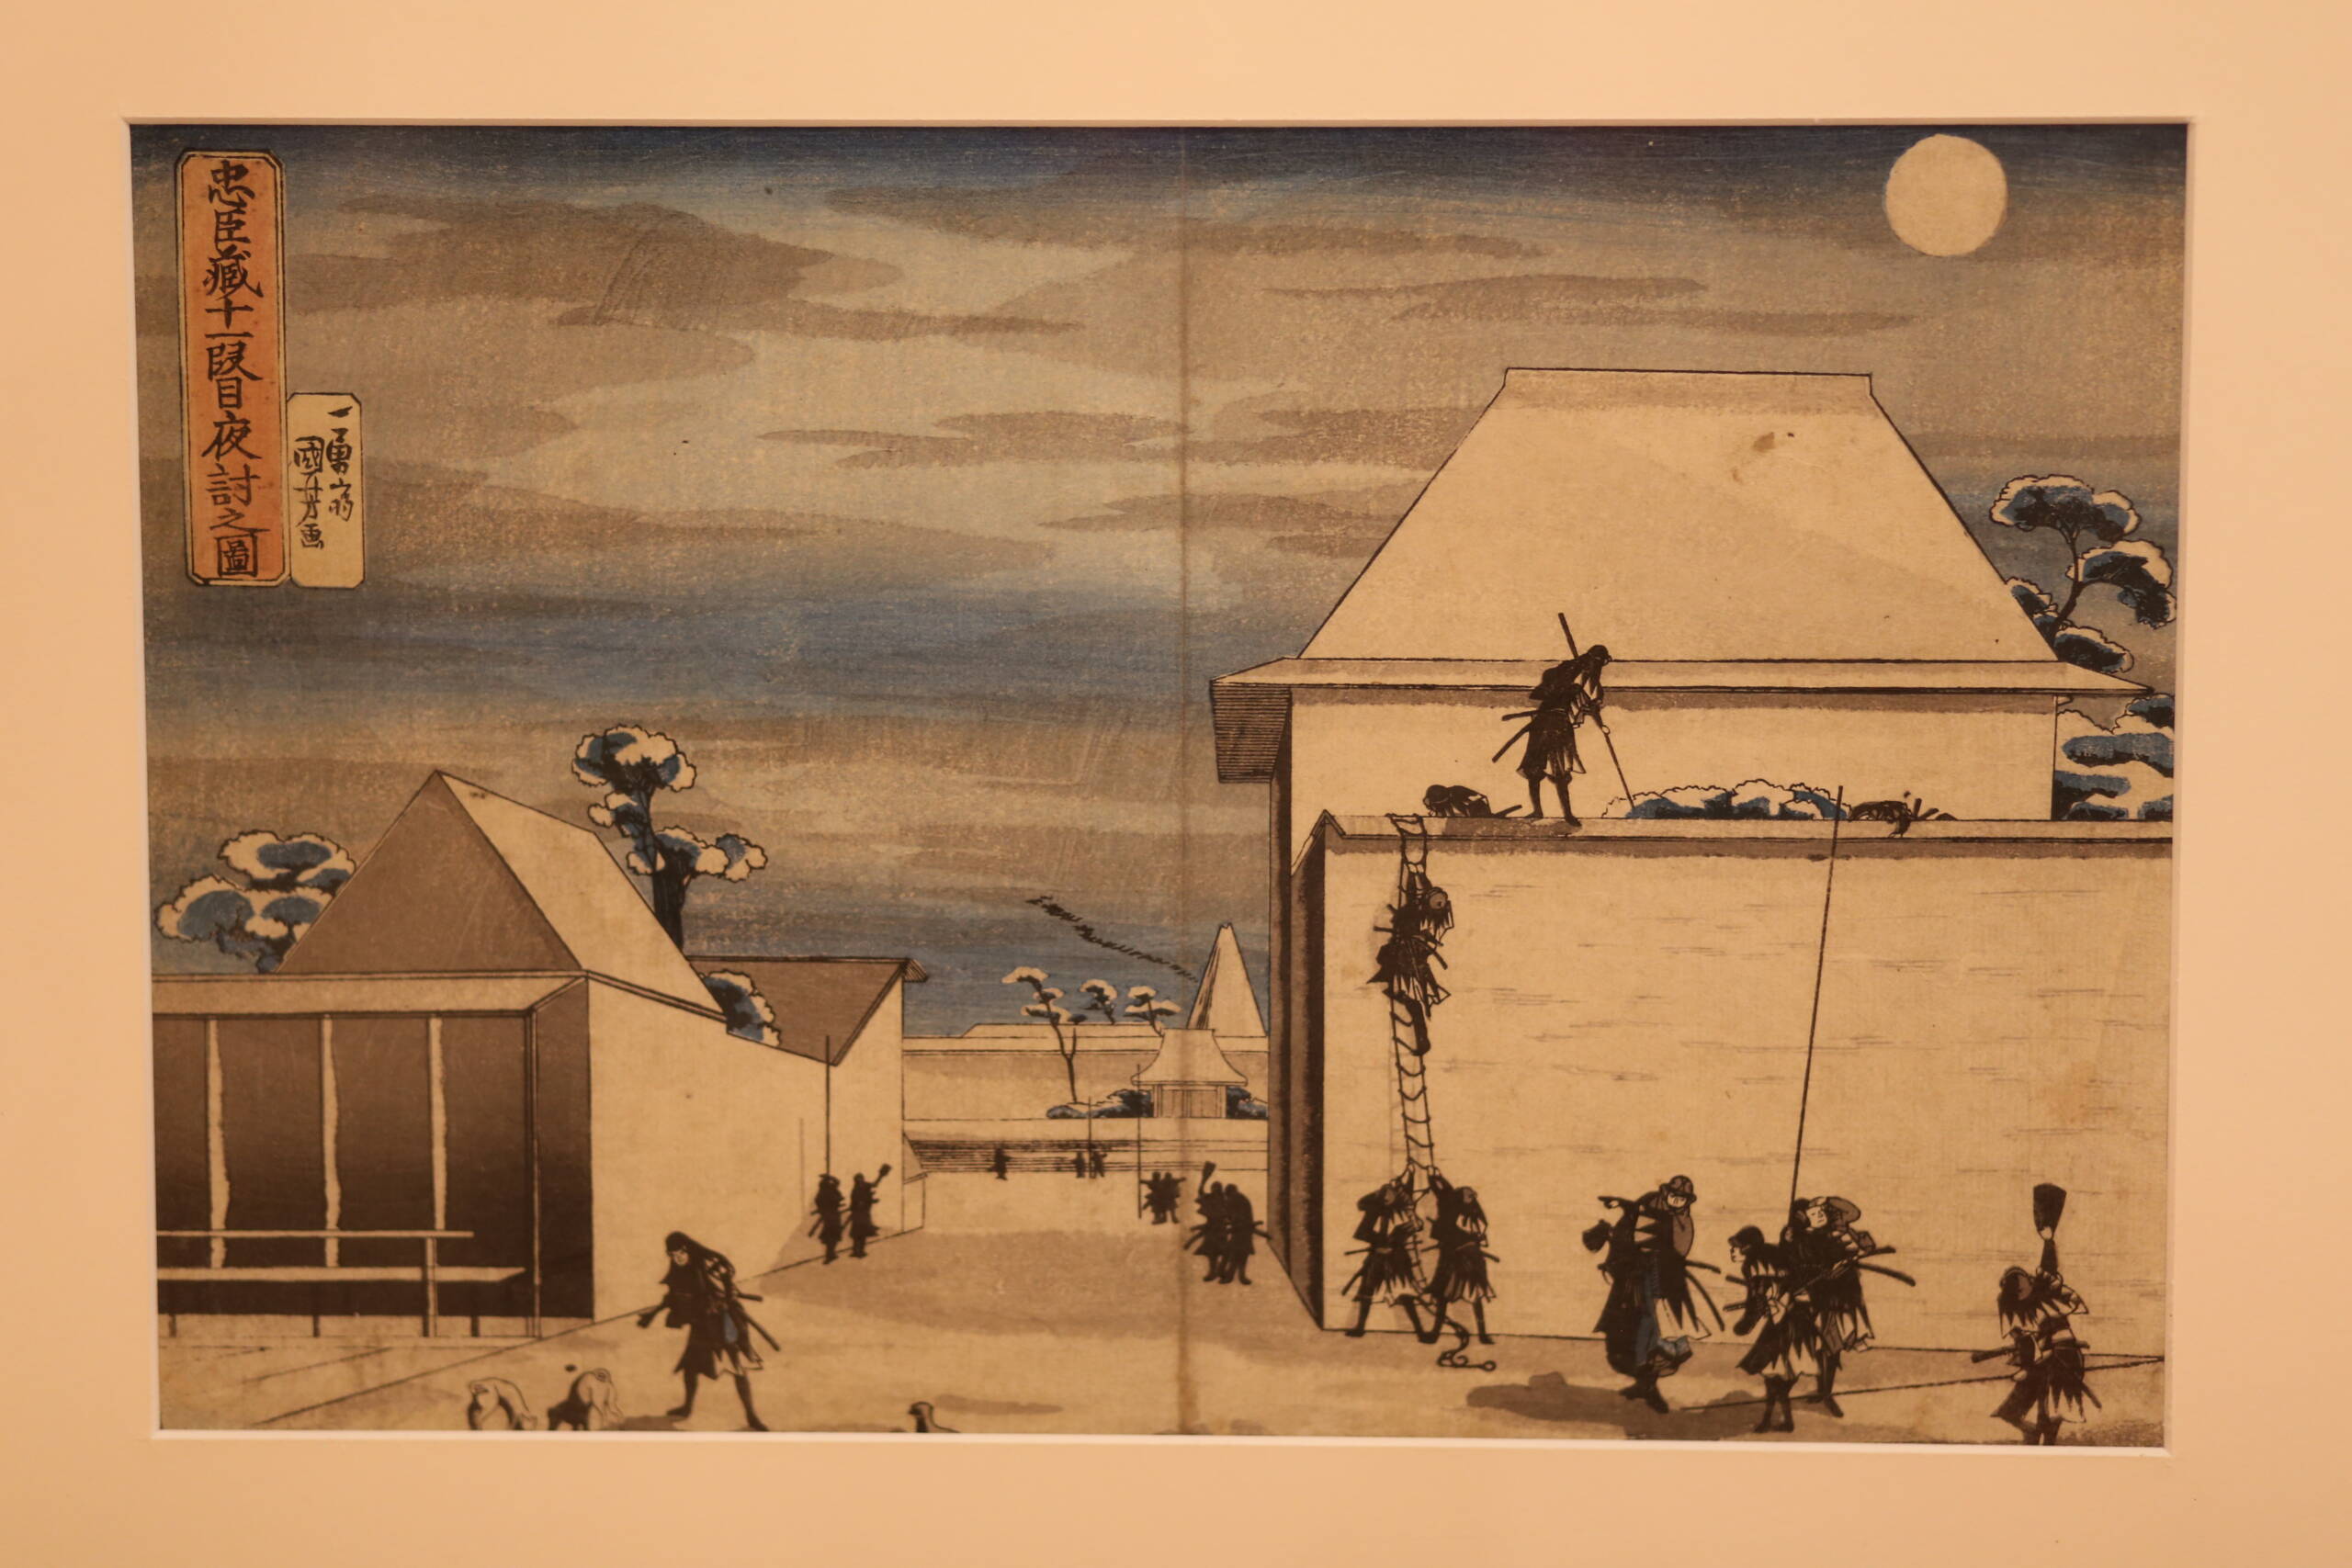 Japanese woodblock prints: Utagawa Kuniyoshi's "Attack at Night, Chūshingura, Act XI"